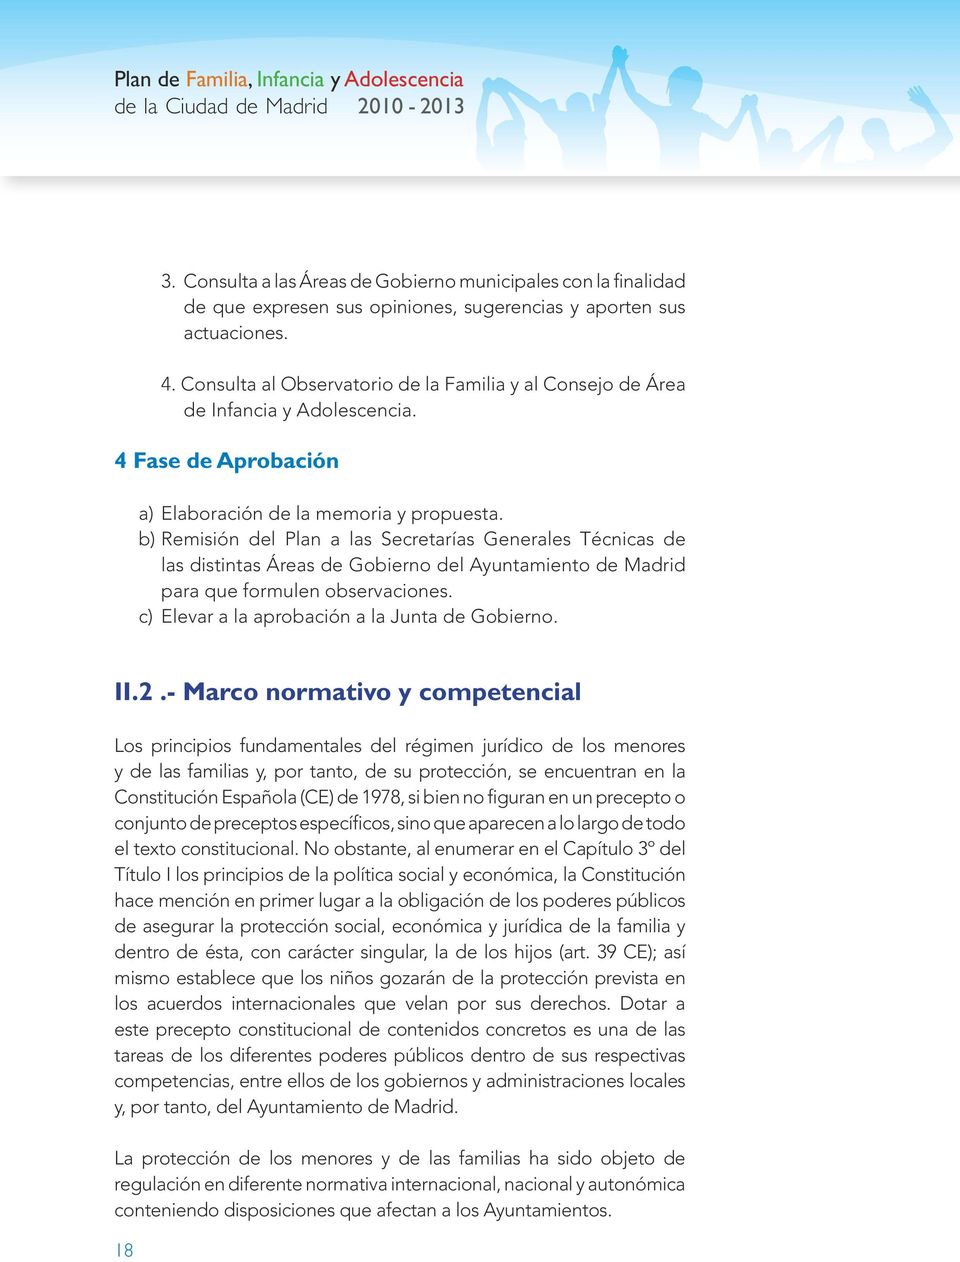 b) Remisión del Plan a las Secretarías Generales Técnicas de las distintas Áreas de Gobierno del Ayuntamiento de Madrid para que formulen observaciones.